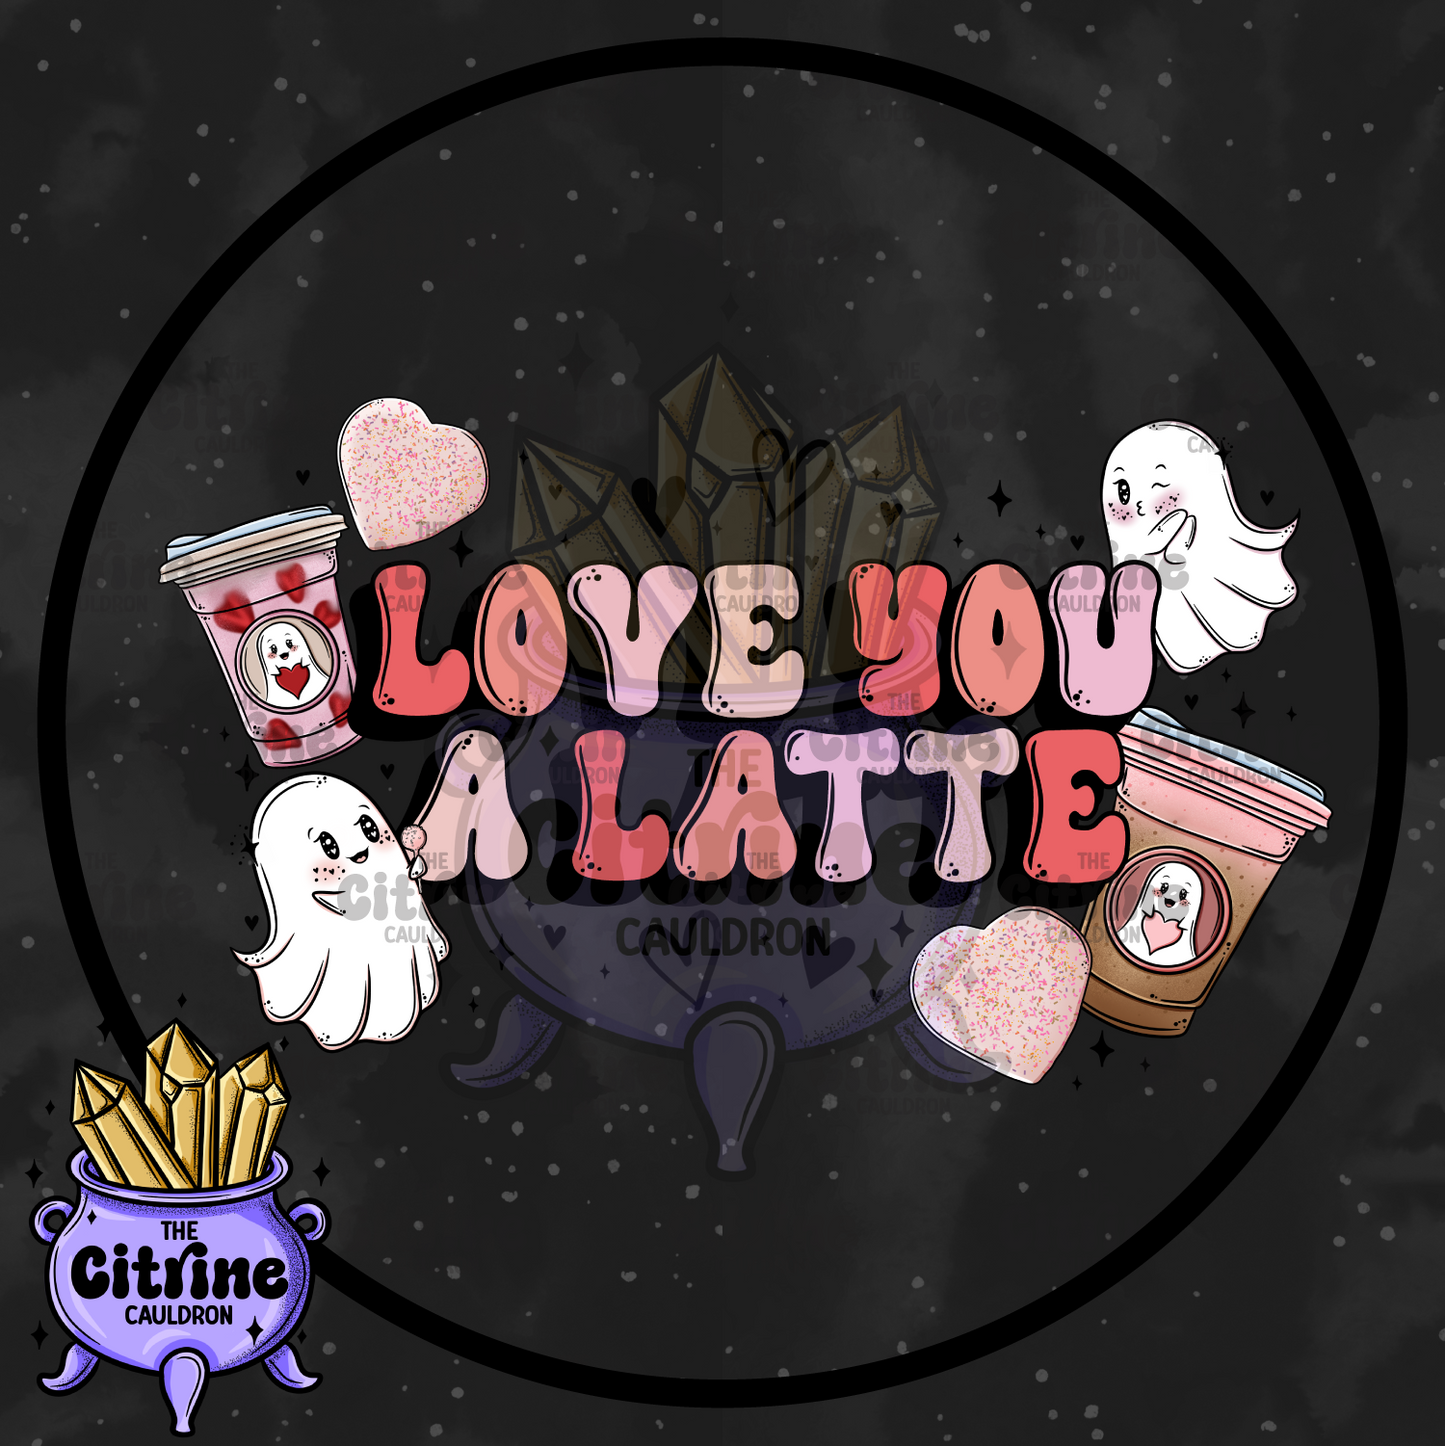 Lovebucks Ghosties - Sublimation PNG